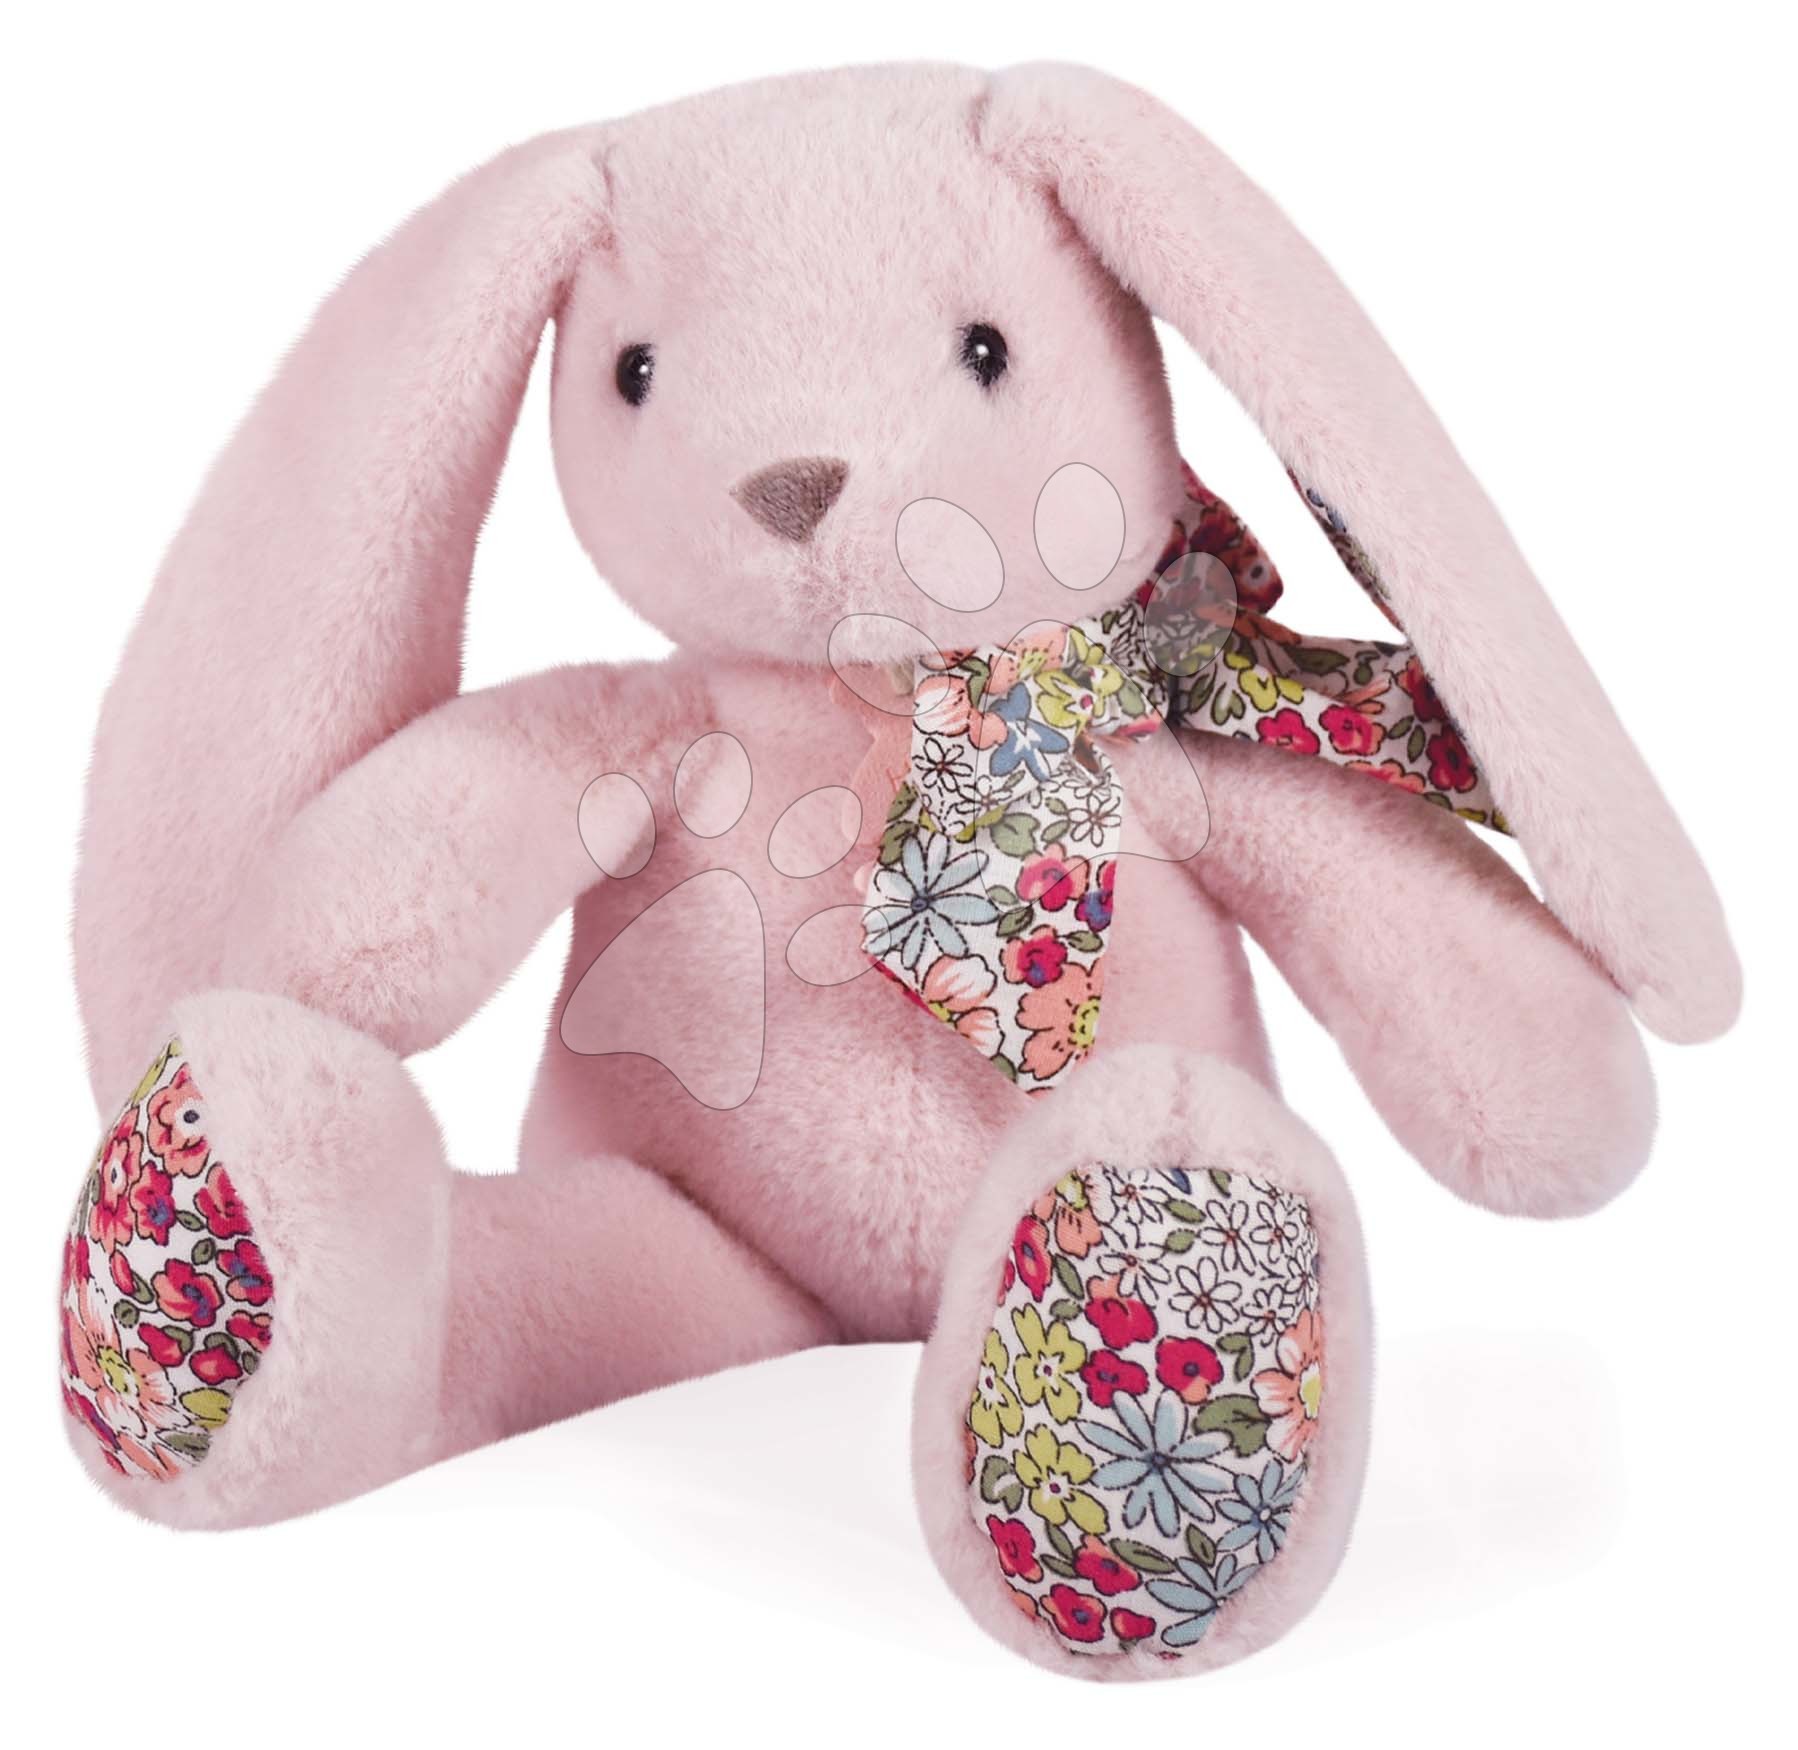 Plüss nyuszi Bunny Tender Pink Copain Calin Histoire d’ Ours rózsaszín 25 cm ajándékcsomagolásban 0 hó-tól Baba játék webáruház - játék rendelés online